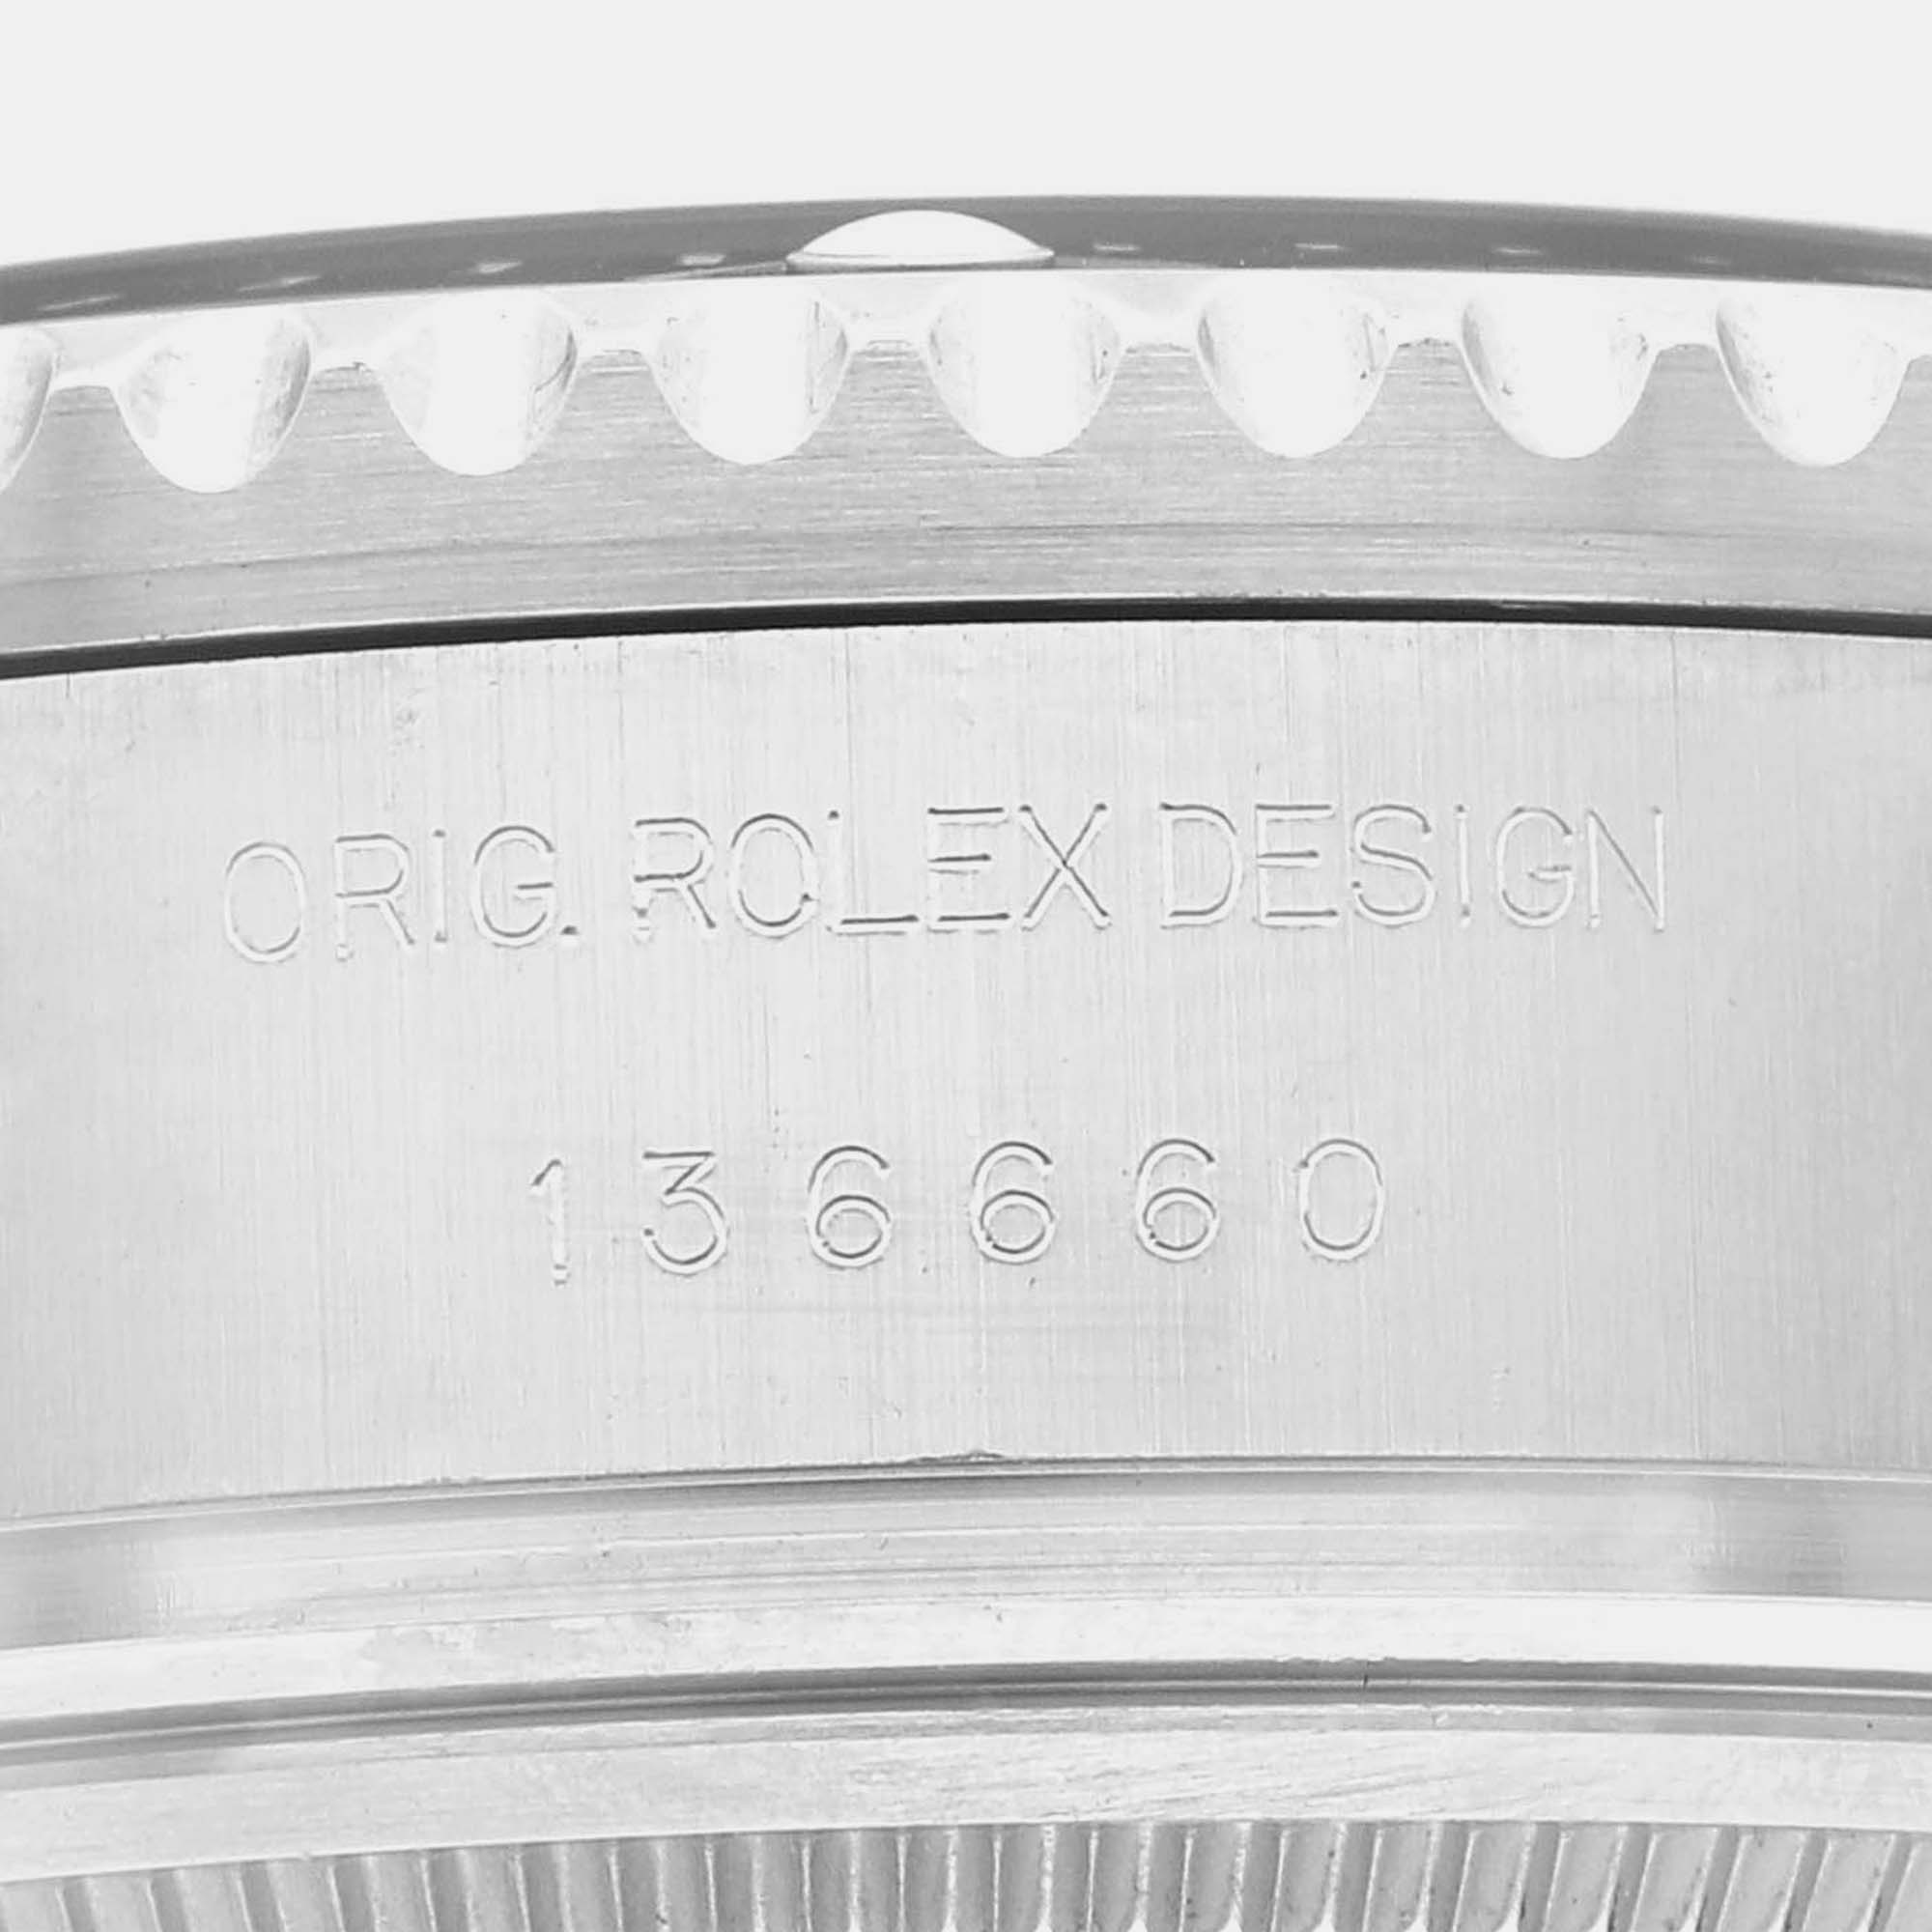 Rolex Seadweller Deepsea Cameron D-Blue Dial Steel Men's Watch 136660 44 Mm